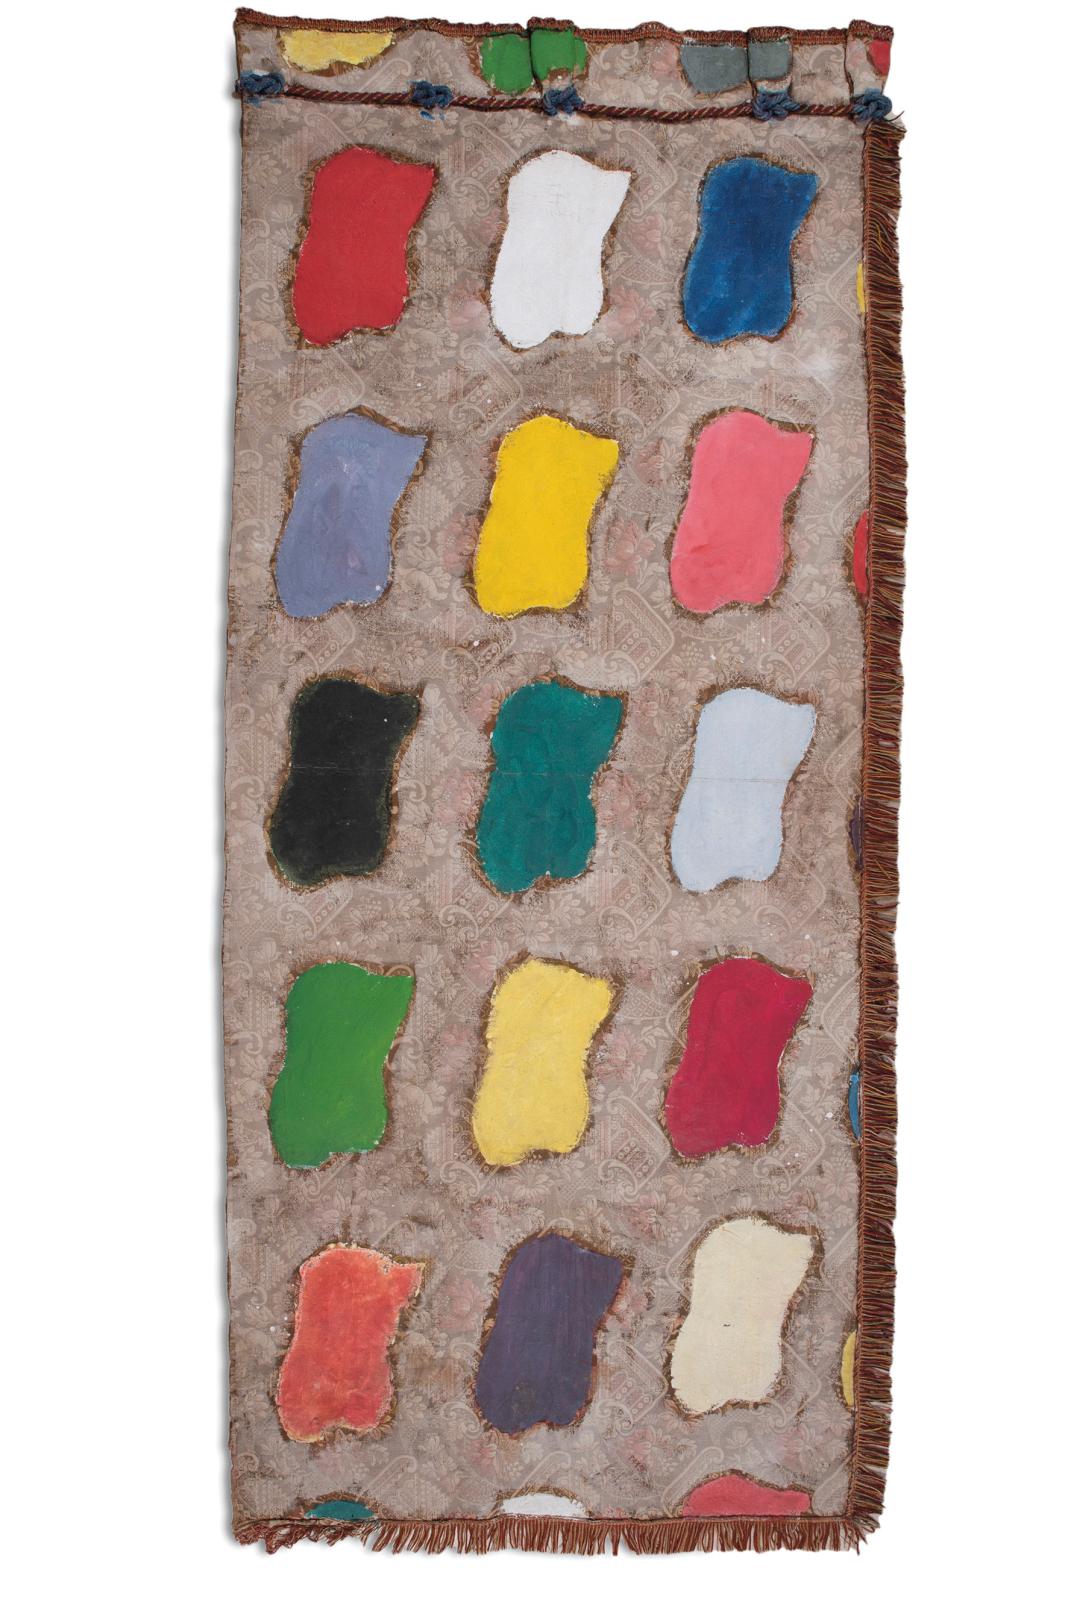 Les couleurs avant-gardistes  de la collection Klapisch